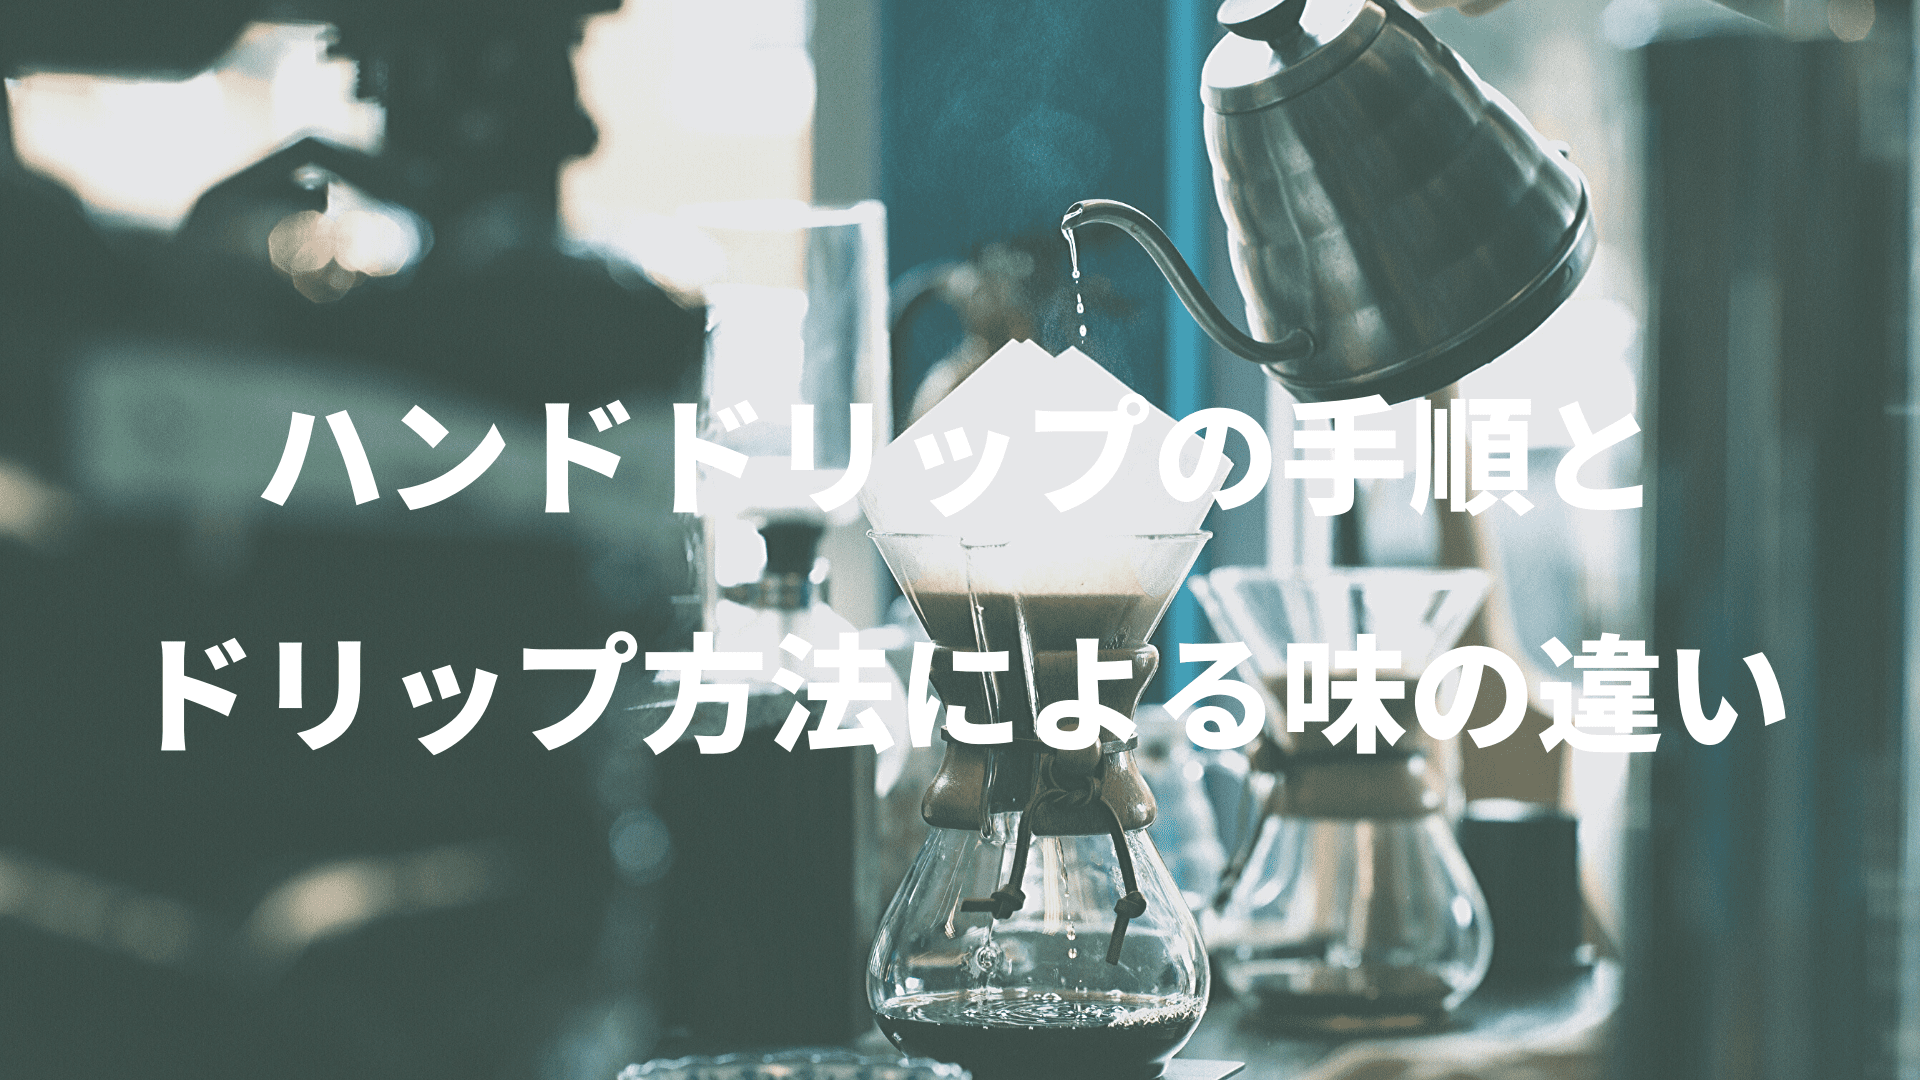 【ドリップコーヒー・方法】ドリップの方法による味の違いを解説